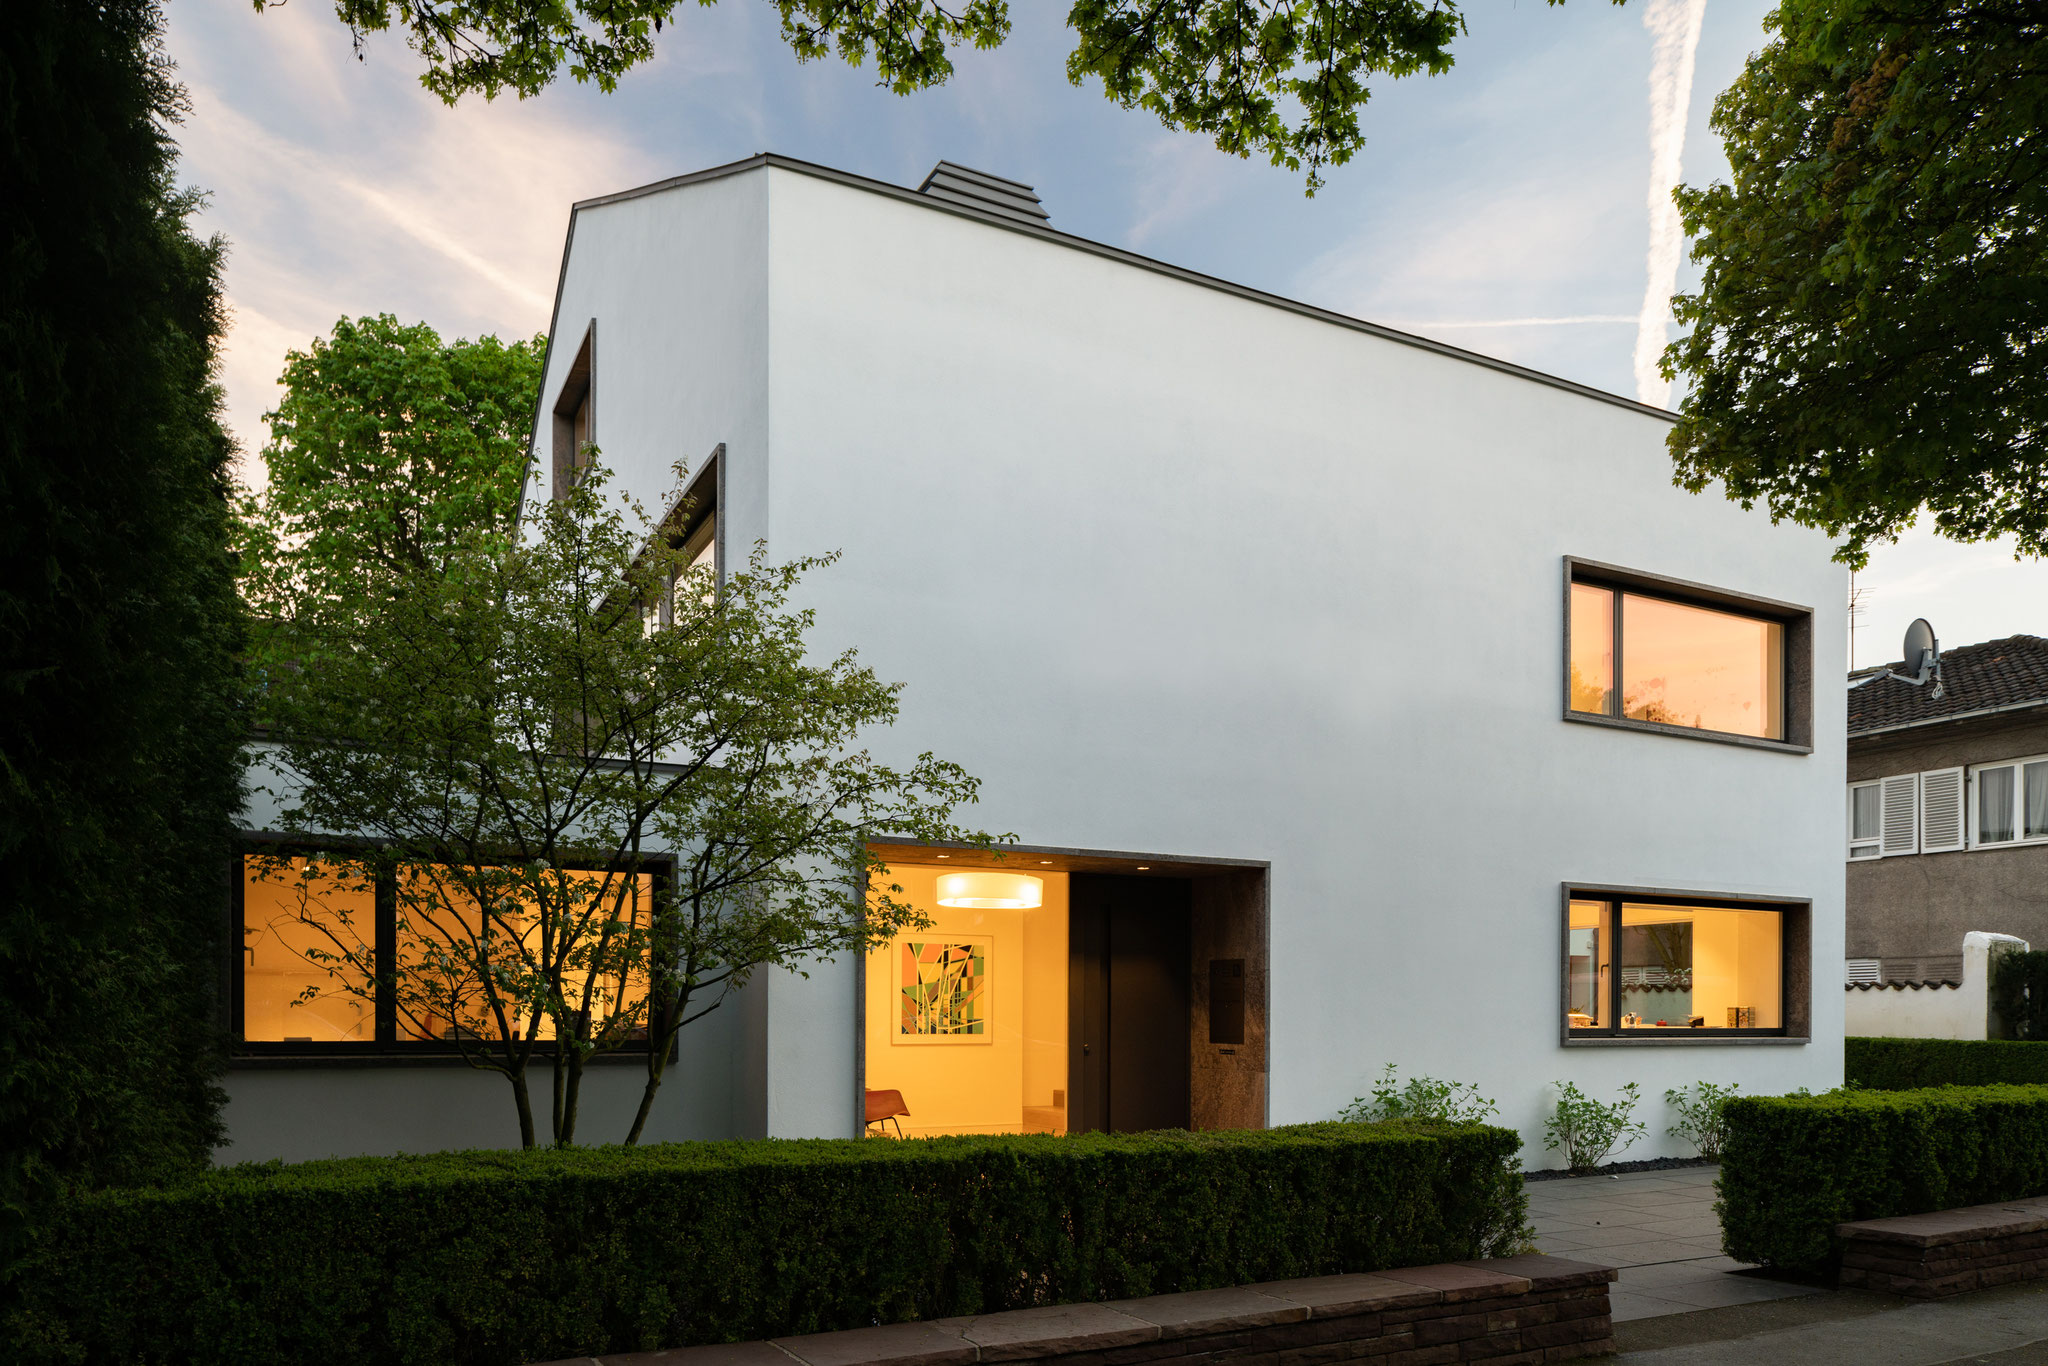 Einfamilienhaus / Architekt Daniel Uhlig 